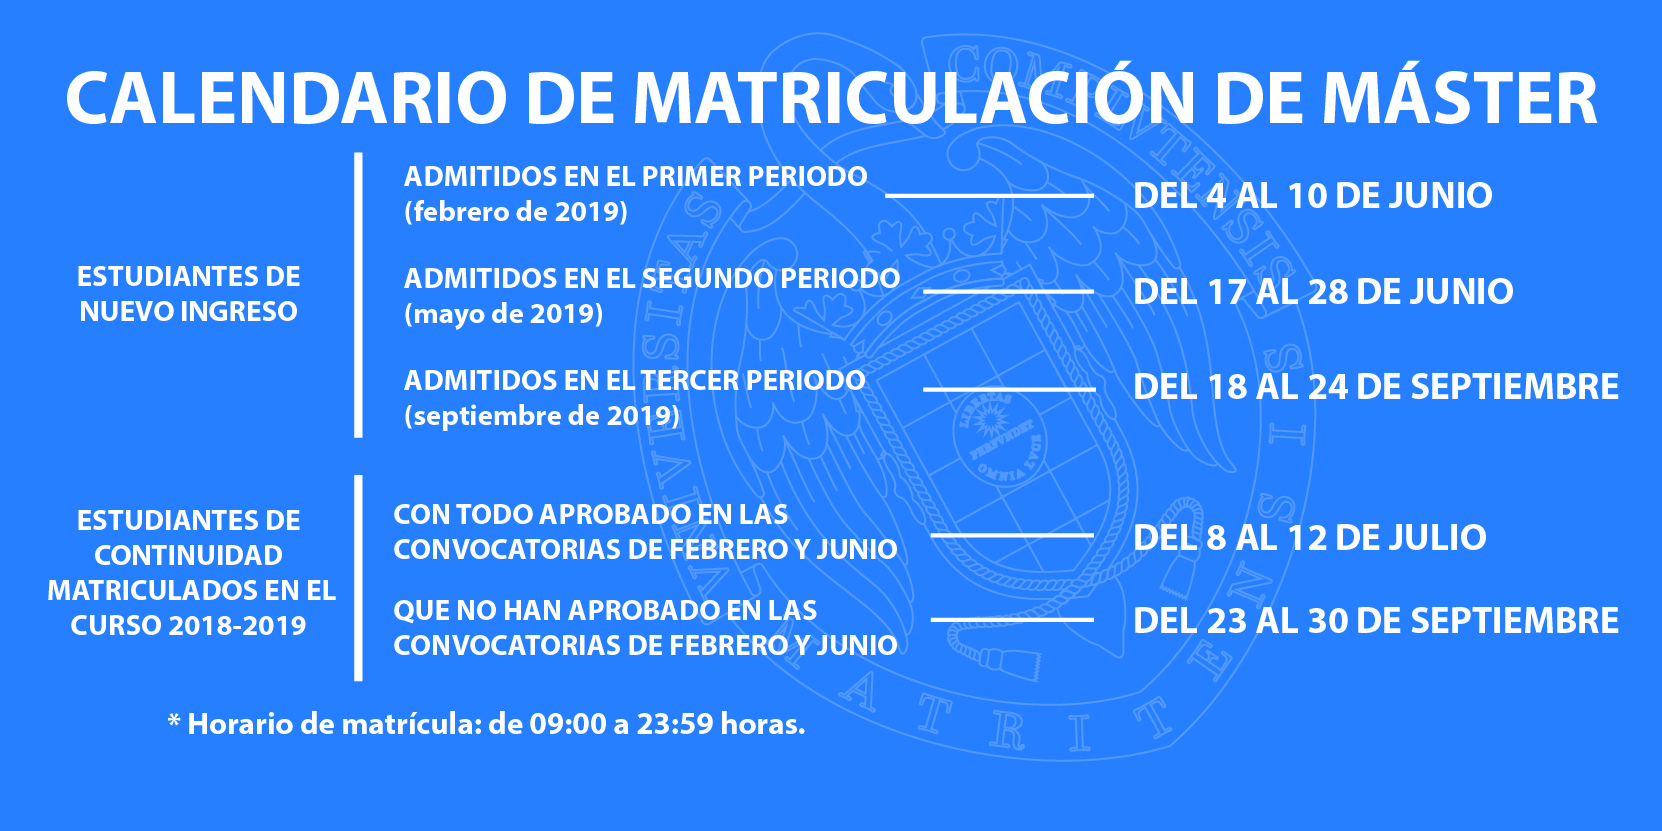 Calendario de matriculación Máster 2019-2020